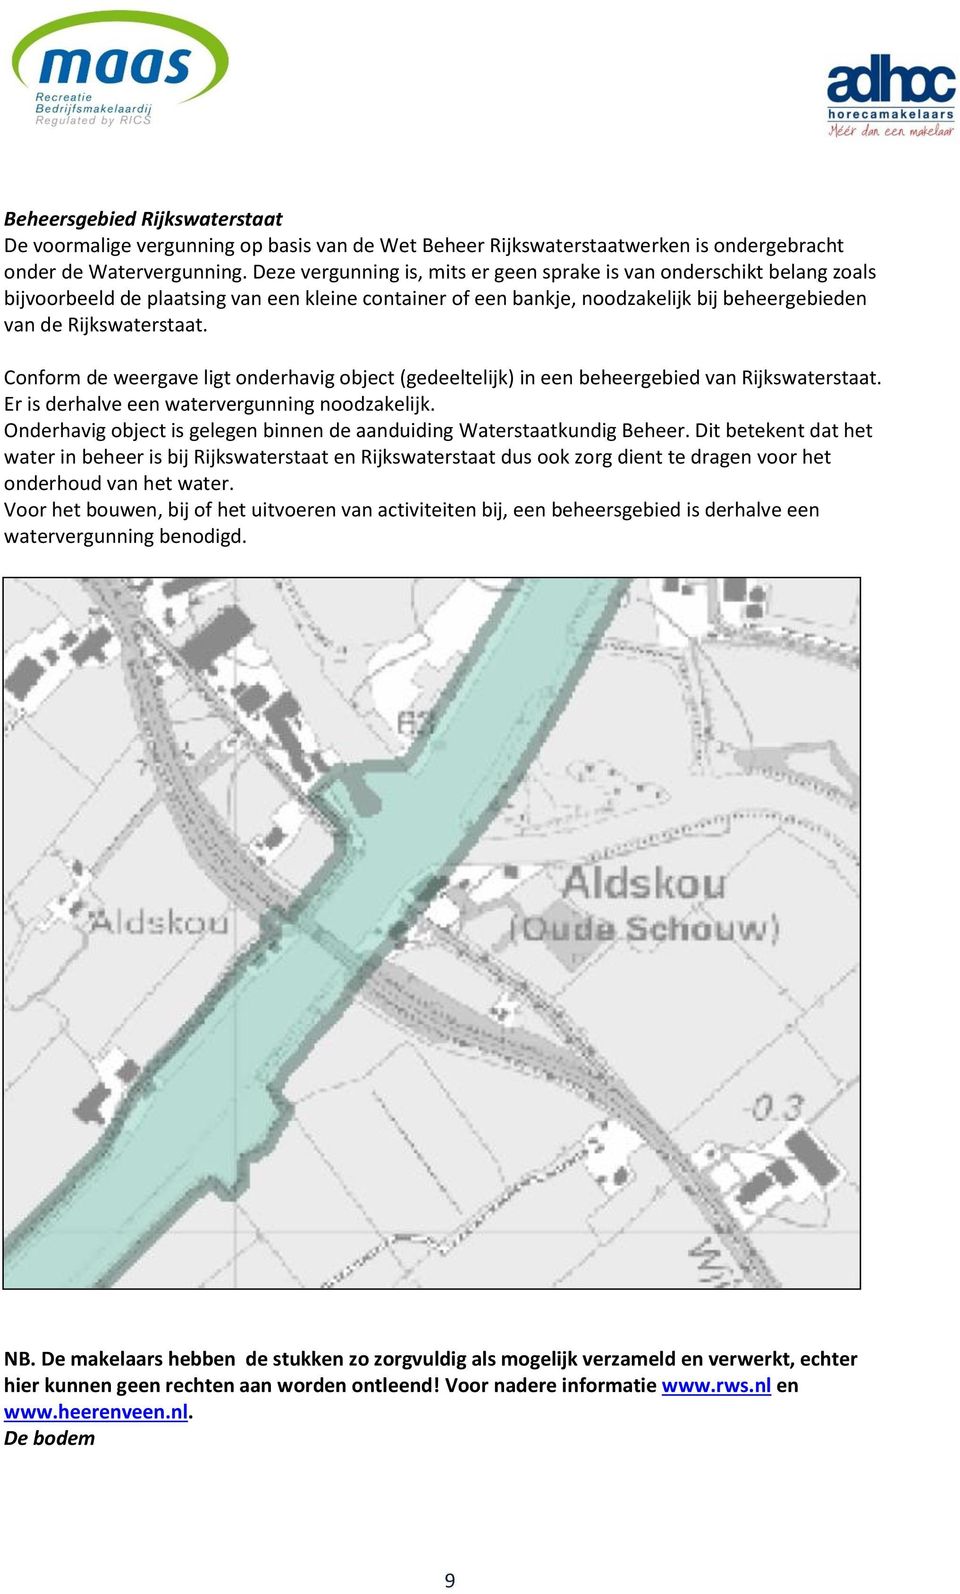 Conform de weergave ligt onderhavig object (gedeeltelijk) in een beheergebied van Rijkswaterstaat. Er is derhalve een watervergunning noodzakelijk.